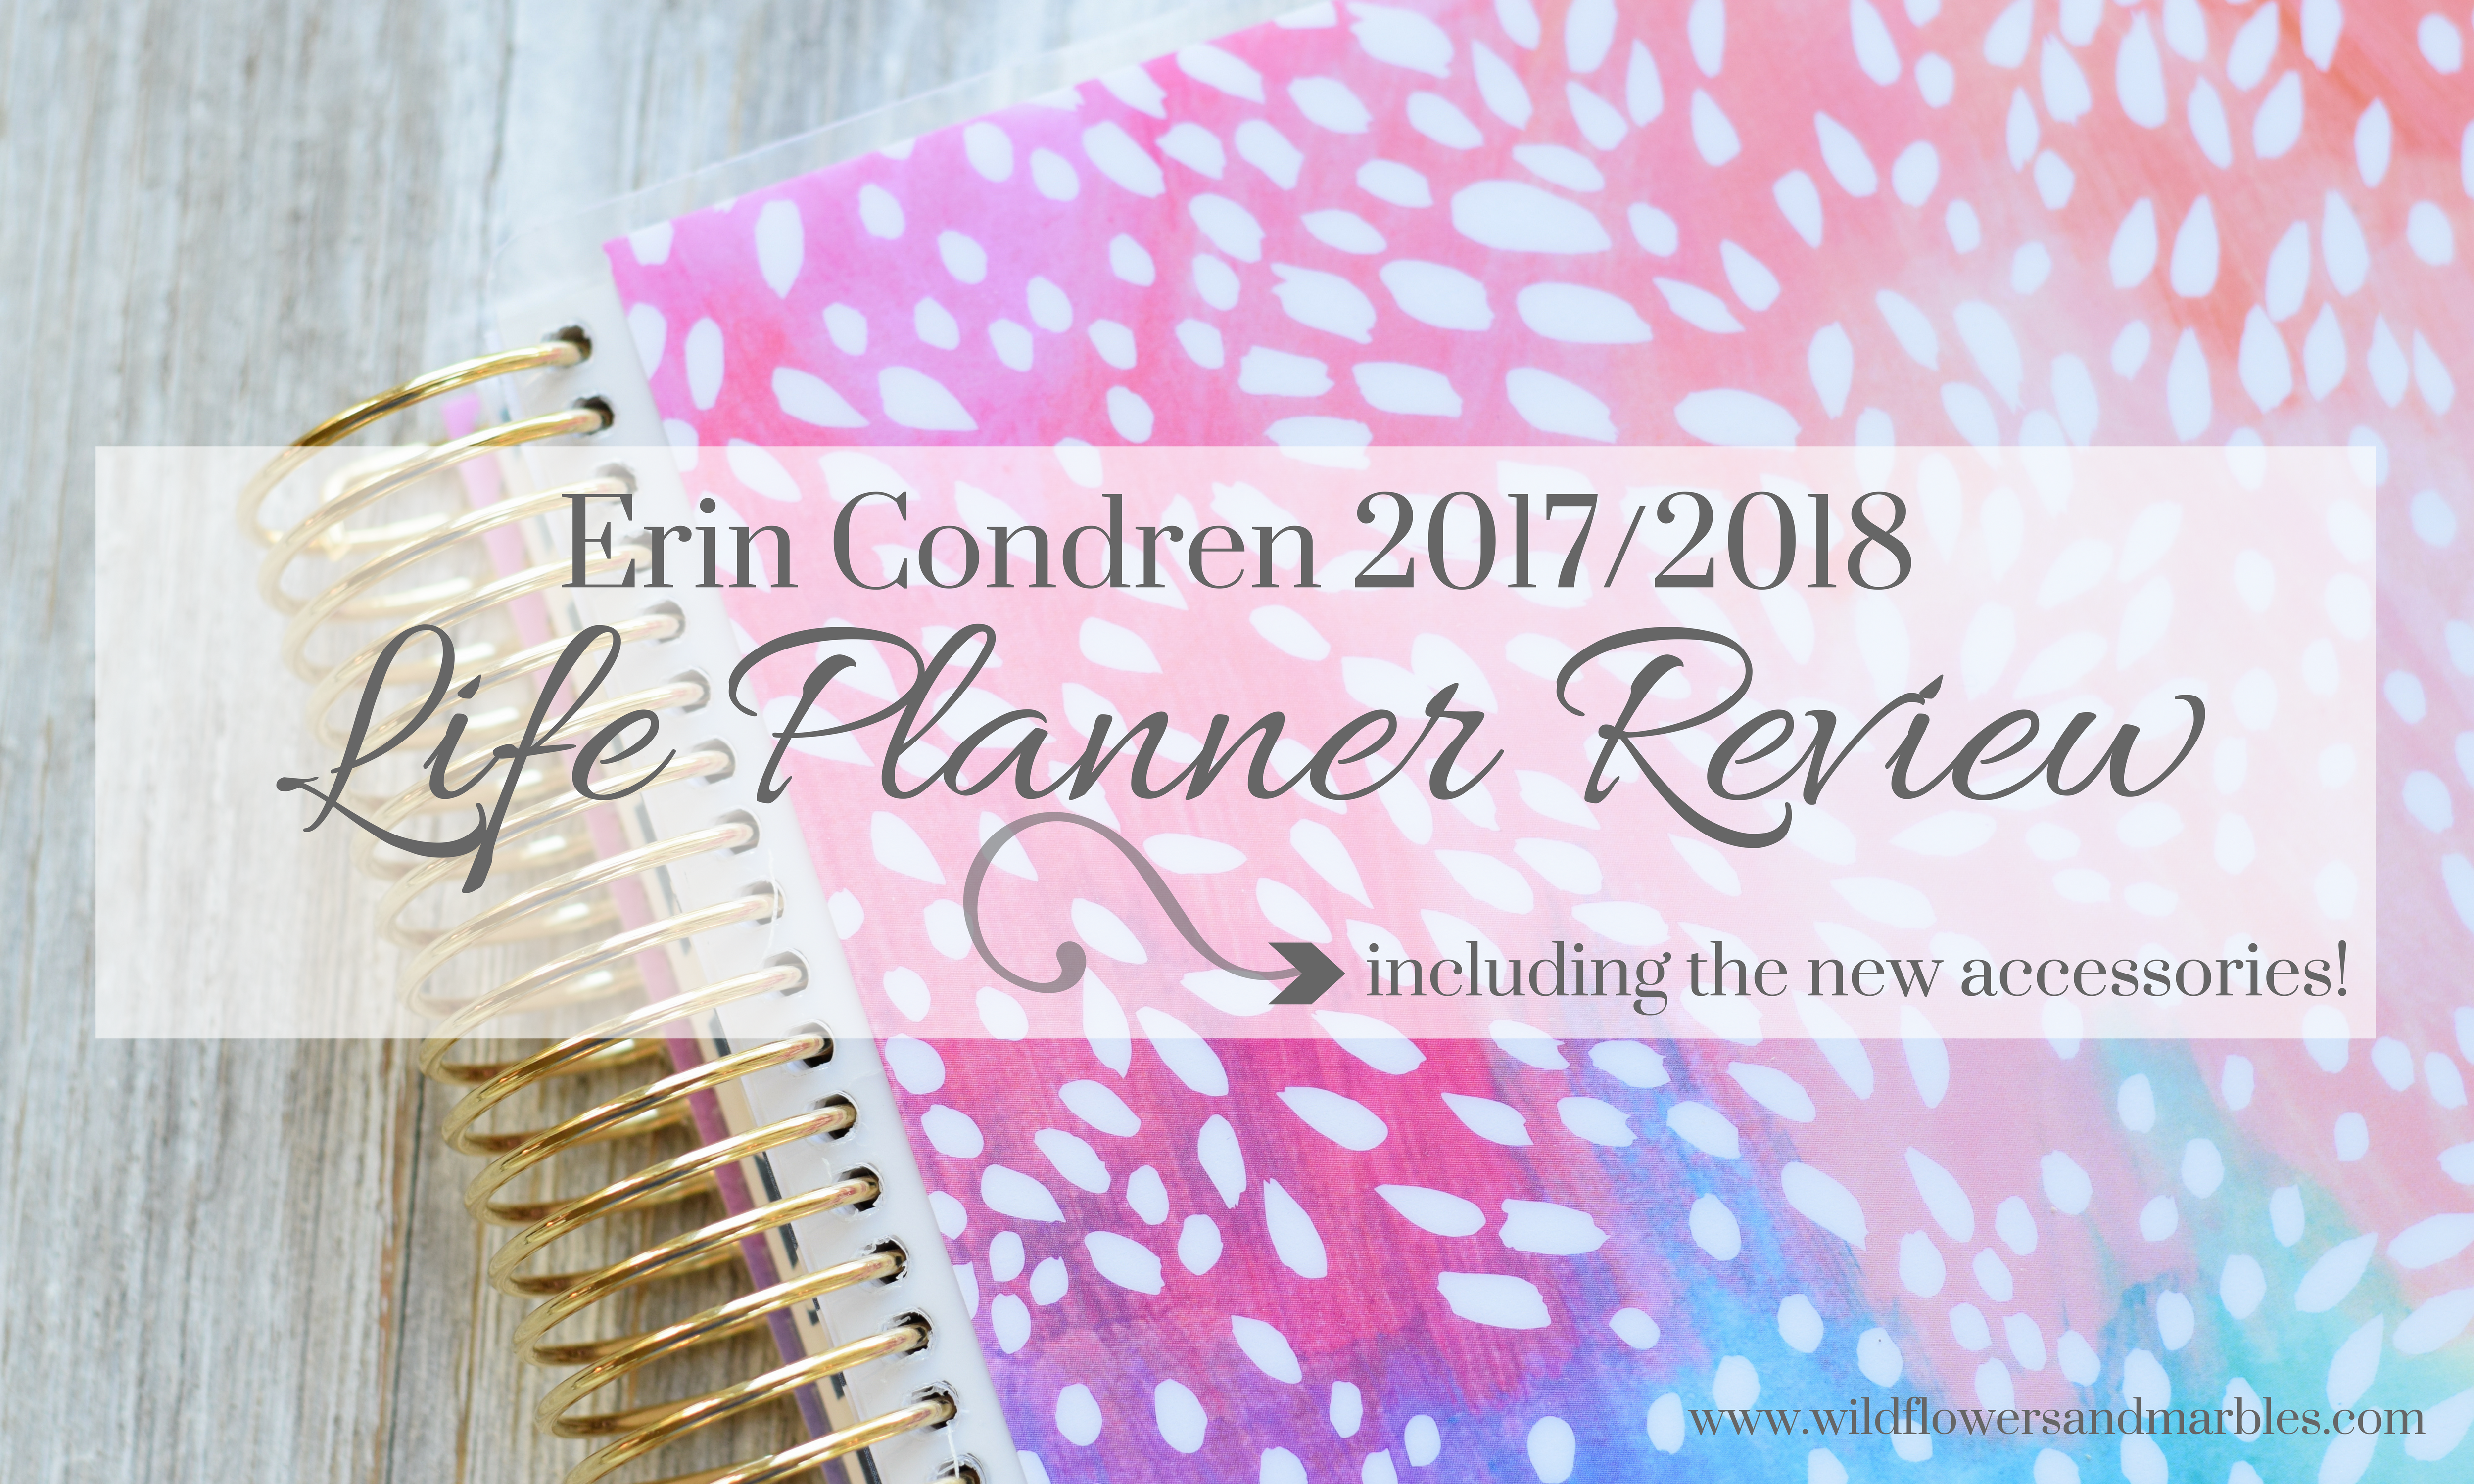 Review of the 2017-2018 Erin Condren Life Planner